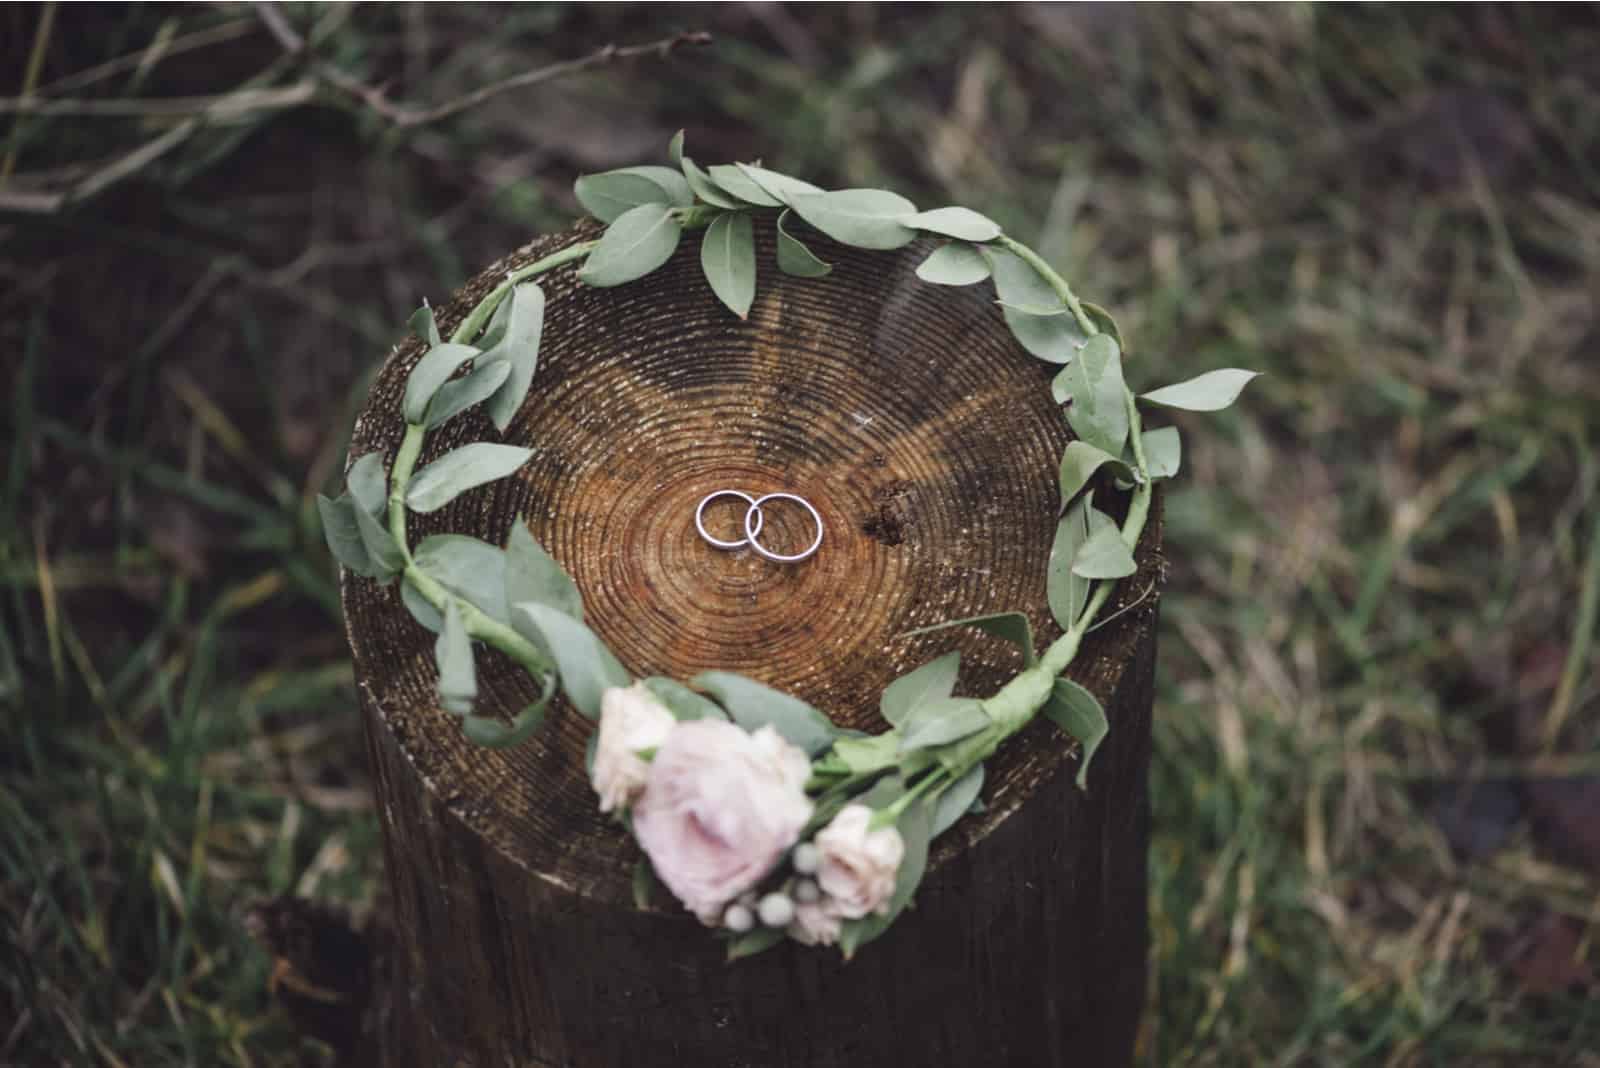 Eheringe in einem Blumenstirnband auf einem Holzstumpf